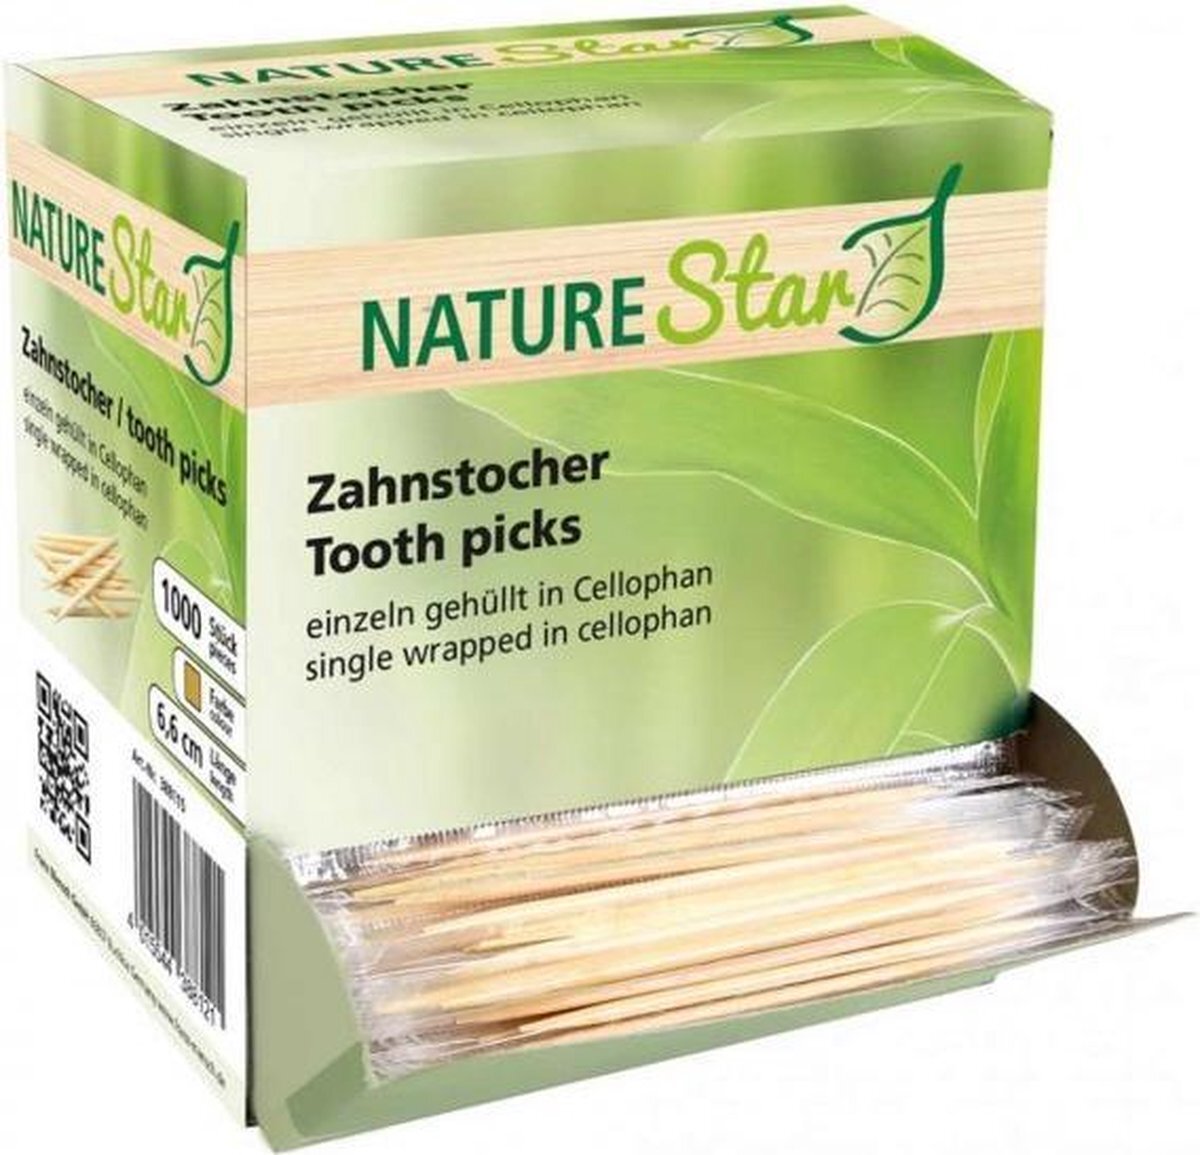 Star Nature NatureStar houten tandenstokers in dispenserdoos 1000 stuks